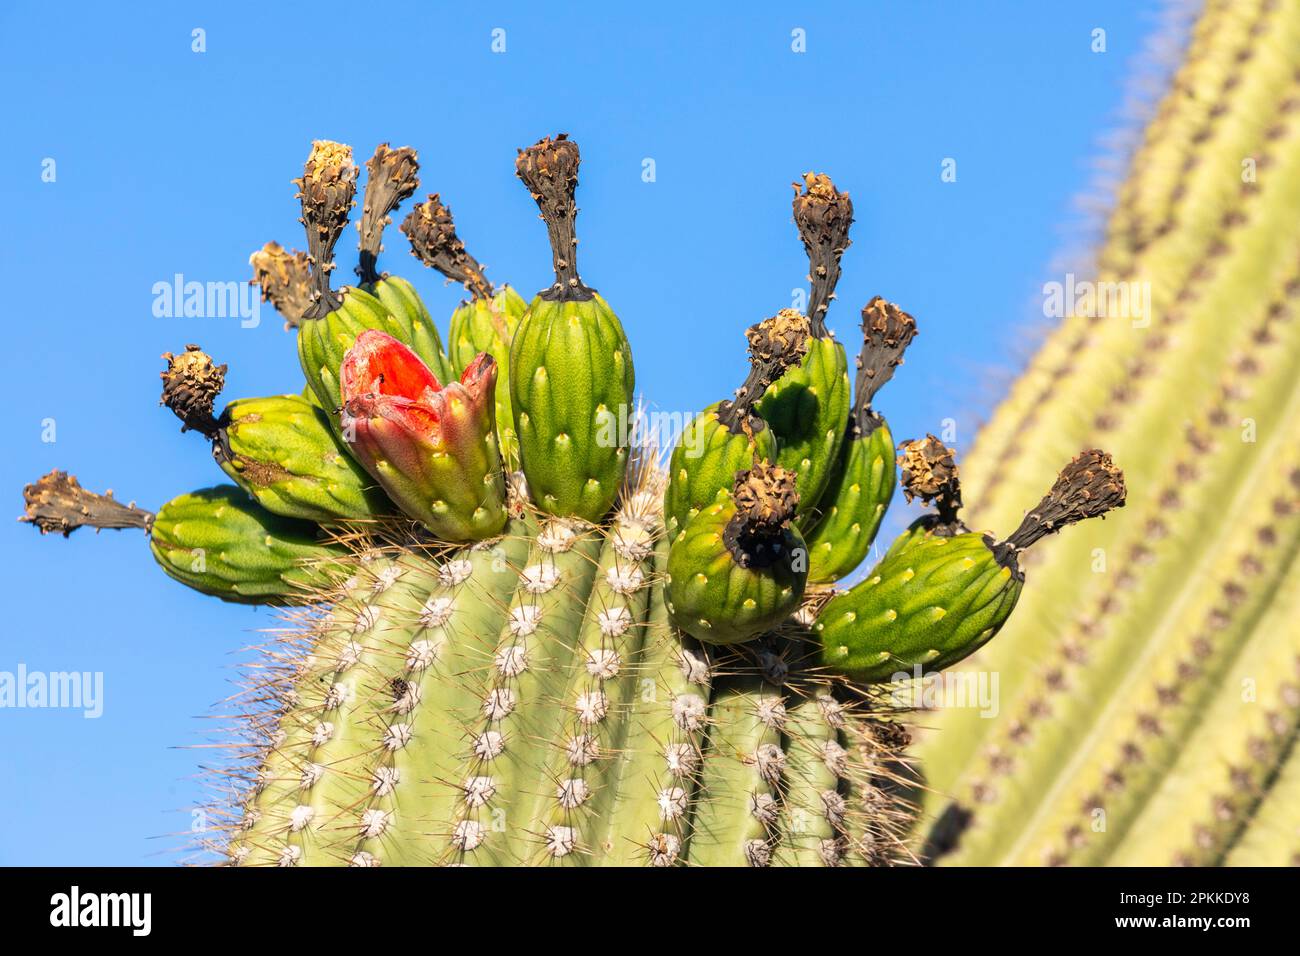 Fruiting saguaro cactus (Carnegiea gigantea), en fleur en juin, Sweetwater Preserve, Tucson, Arizona, États-Unis d'Amérique, Amérique du Nord Banque D'Images